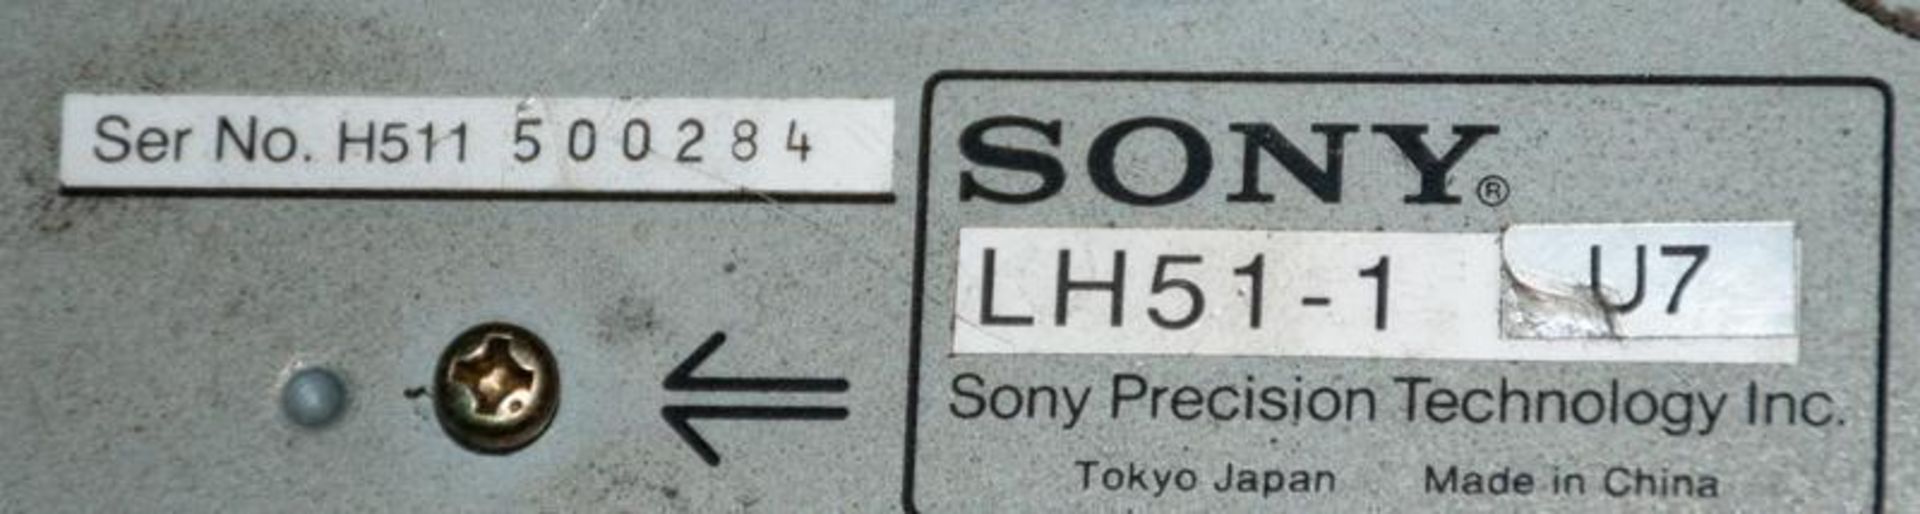 Sony LH51-1 U7 single axis digital readout, s/n H511 500284 - Image 3 of 4